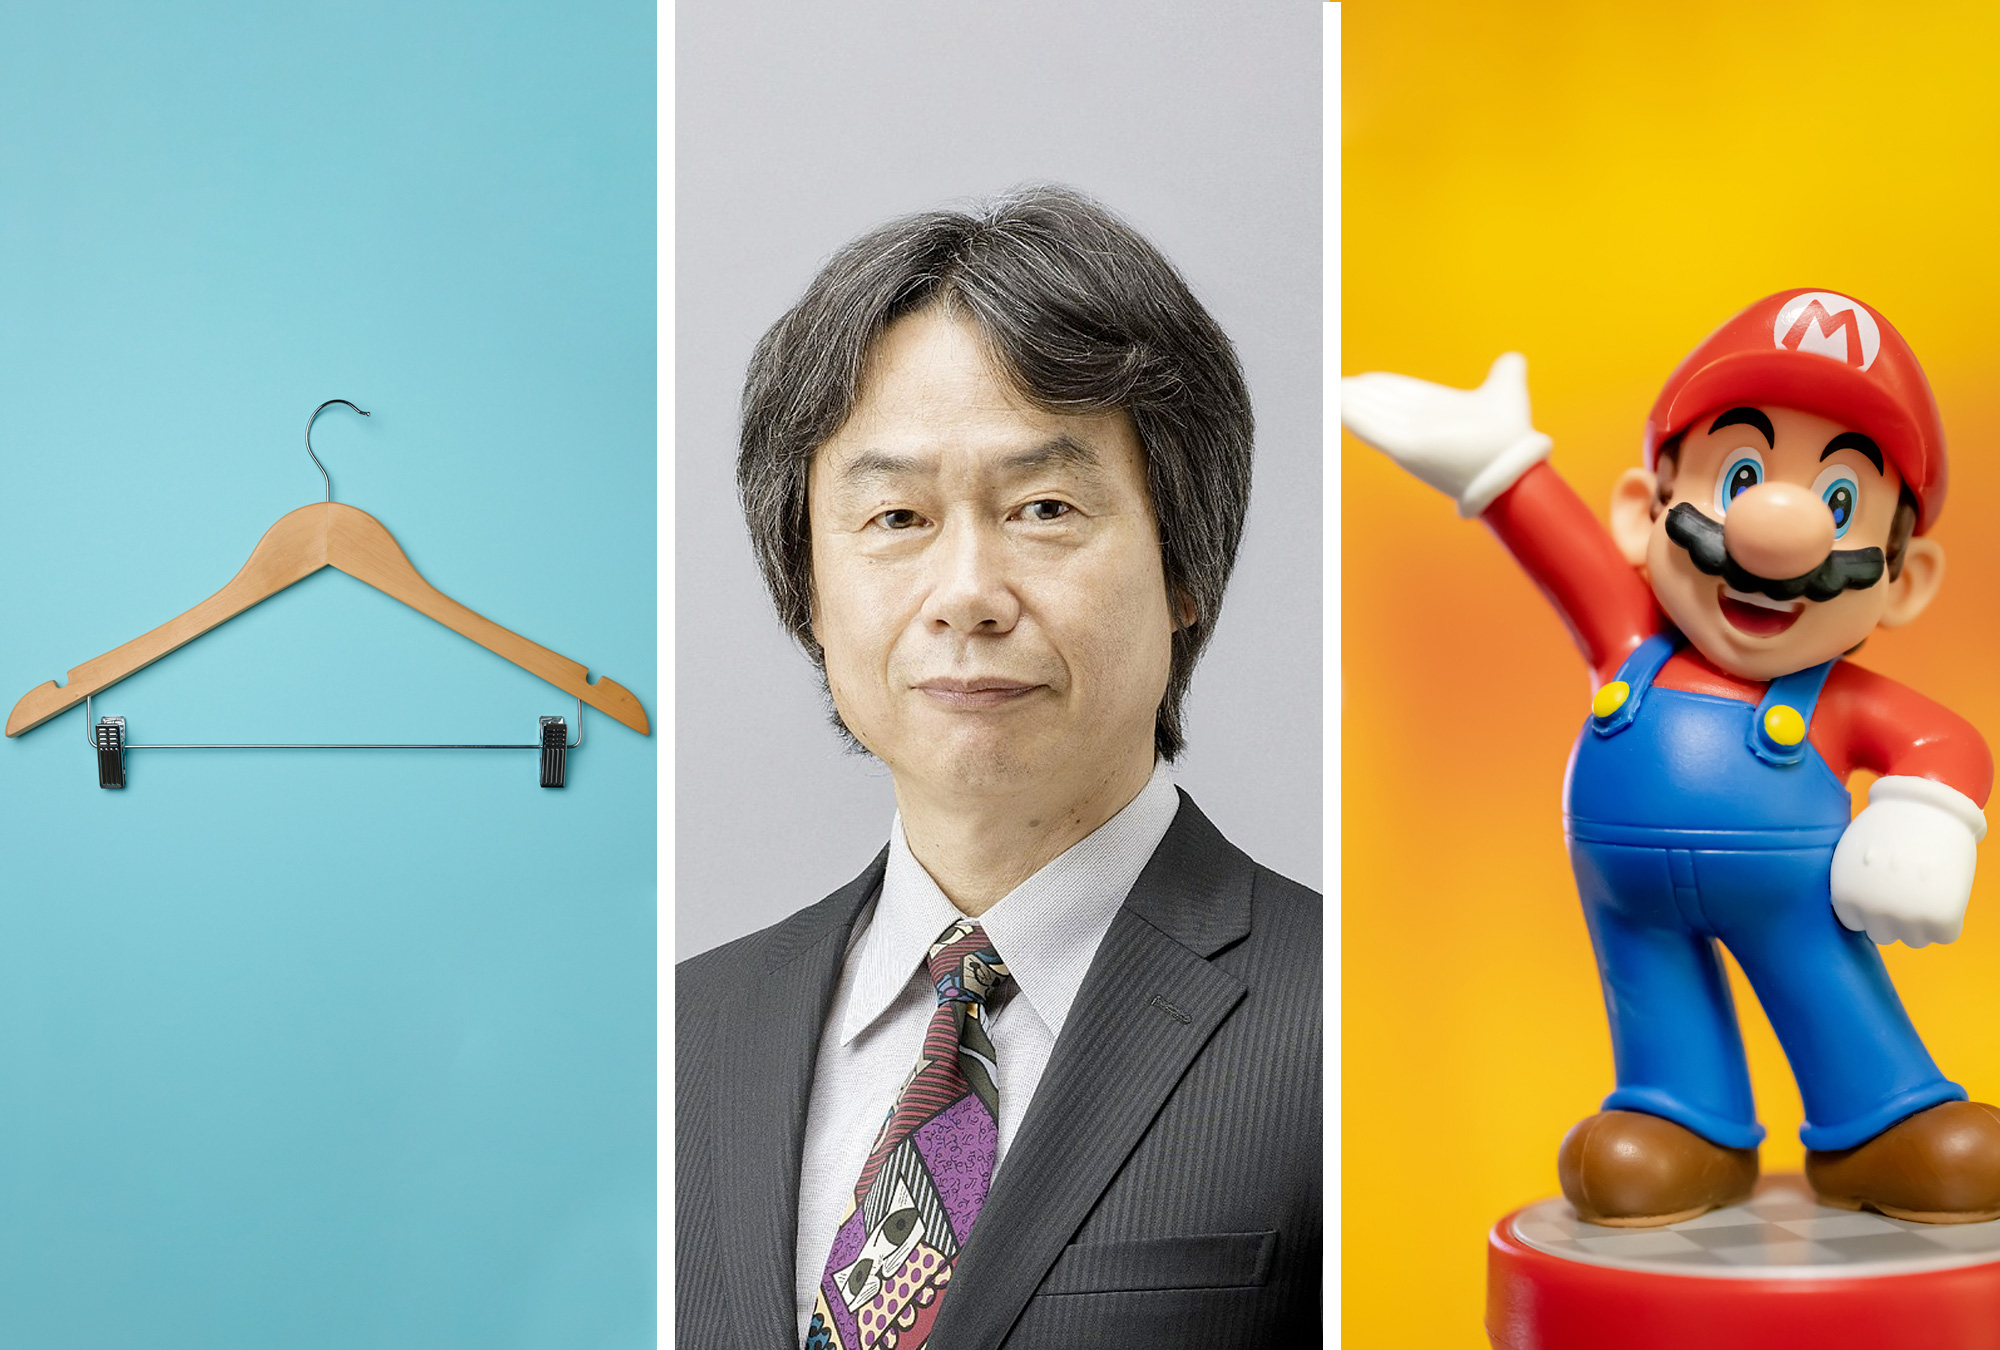 La curiosa historia de Shigeru Miyamoto, el creador de Super Mario Bros, y cómo consiguió trabajo en Nintendo con unos gachos